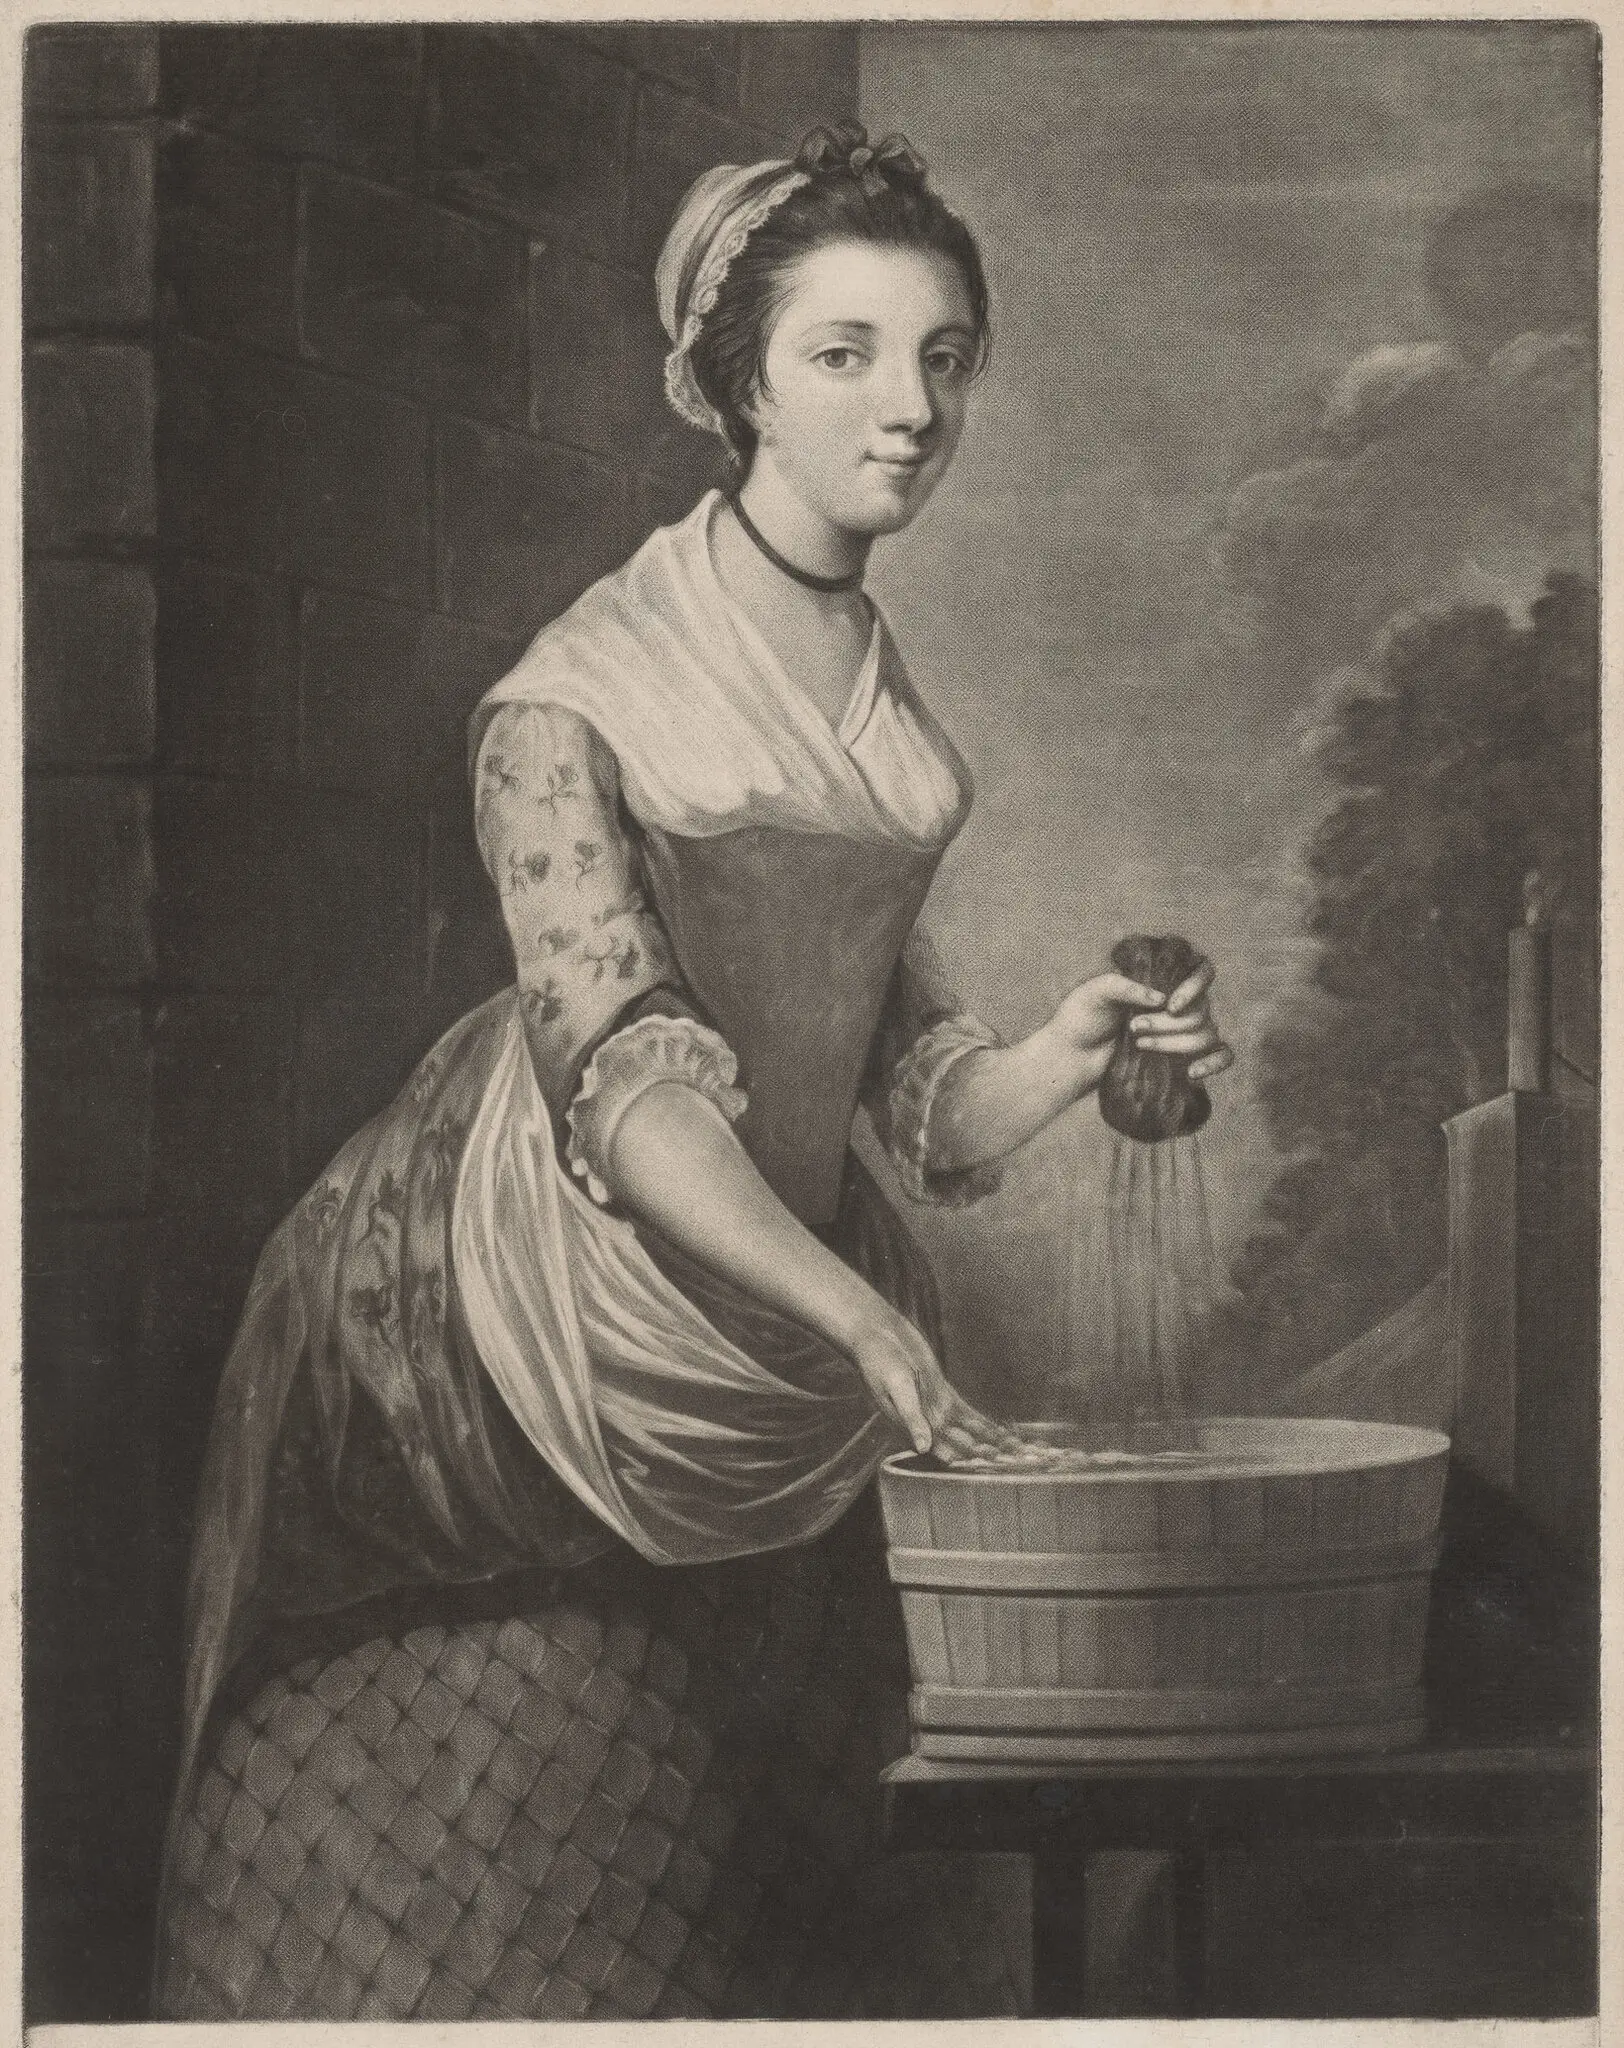 Гравюра с изображением человека, идентифицированного как прачка королевы Шарлотты.  Лента на ее шее — образец произведений рабочего класса, представленных на выставке.